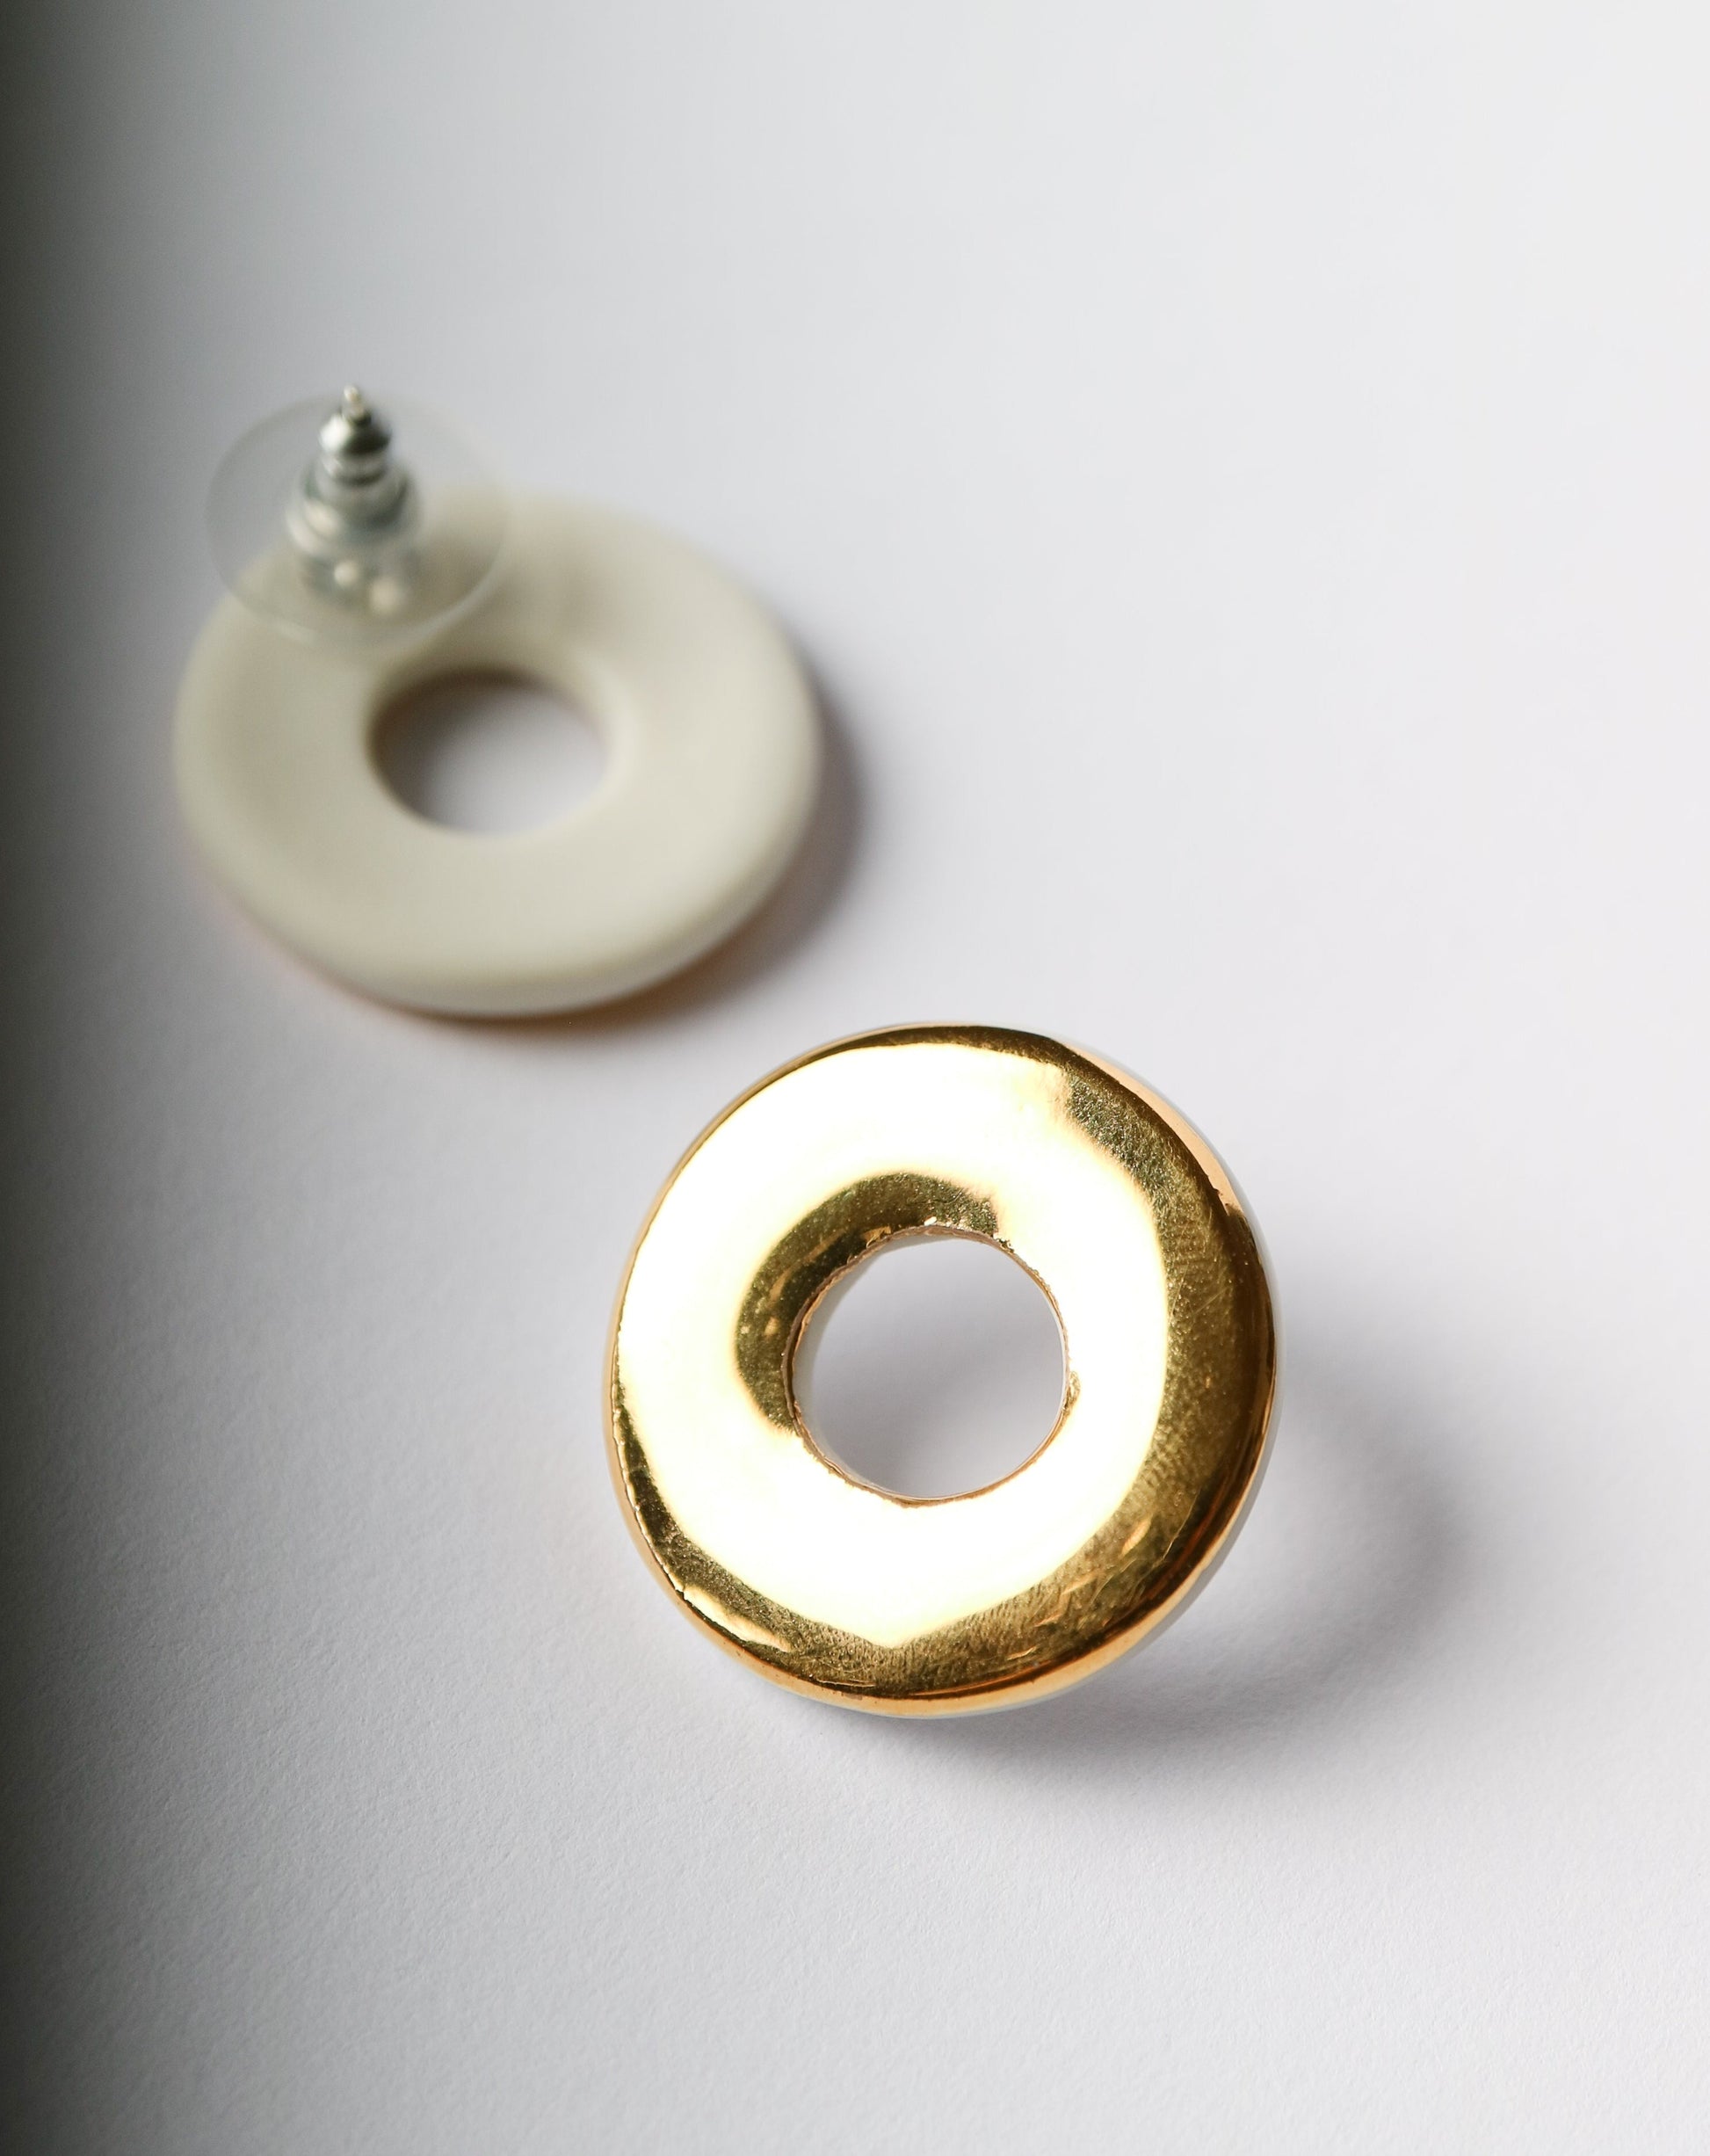 Golden Sun Earrings by Nina Bosch Porcelain jewellery